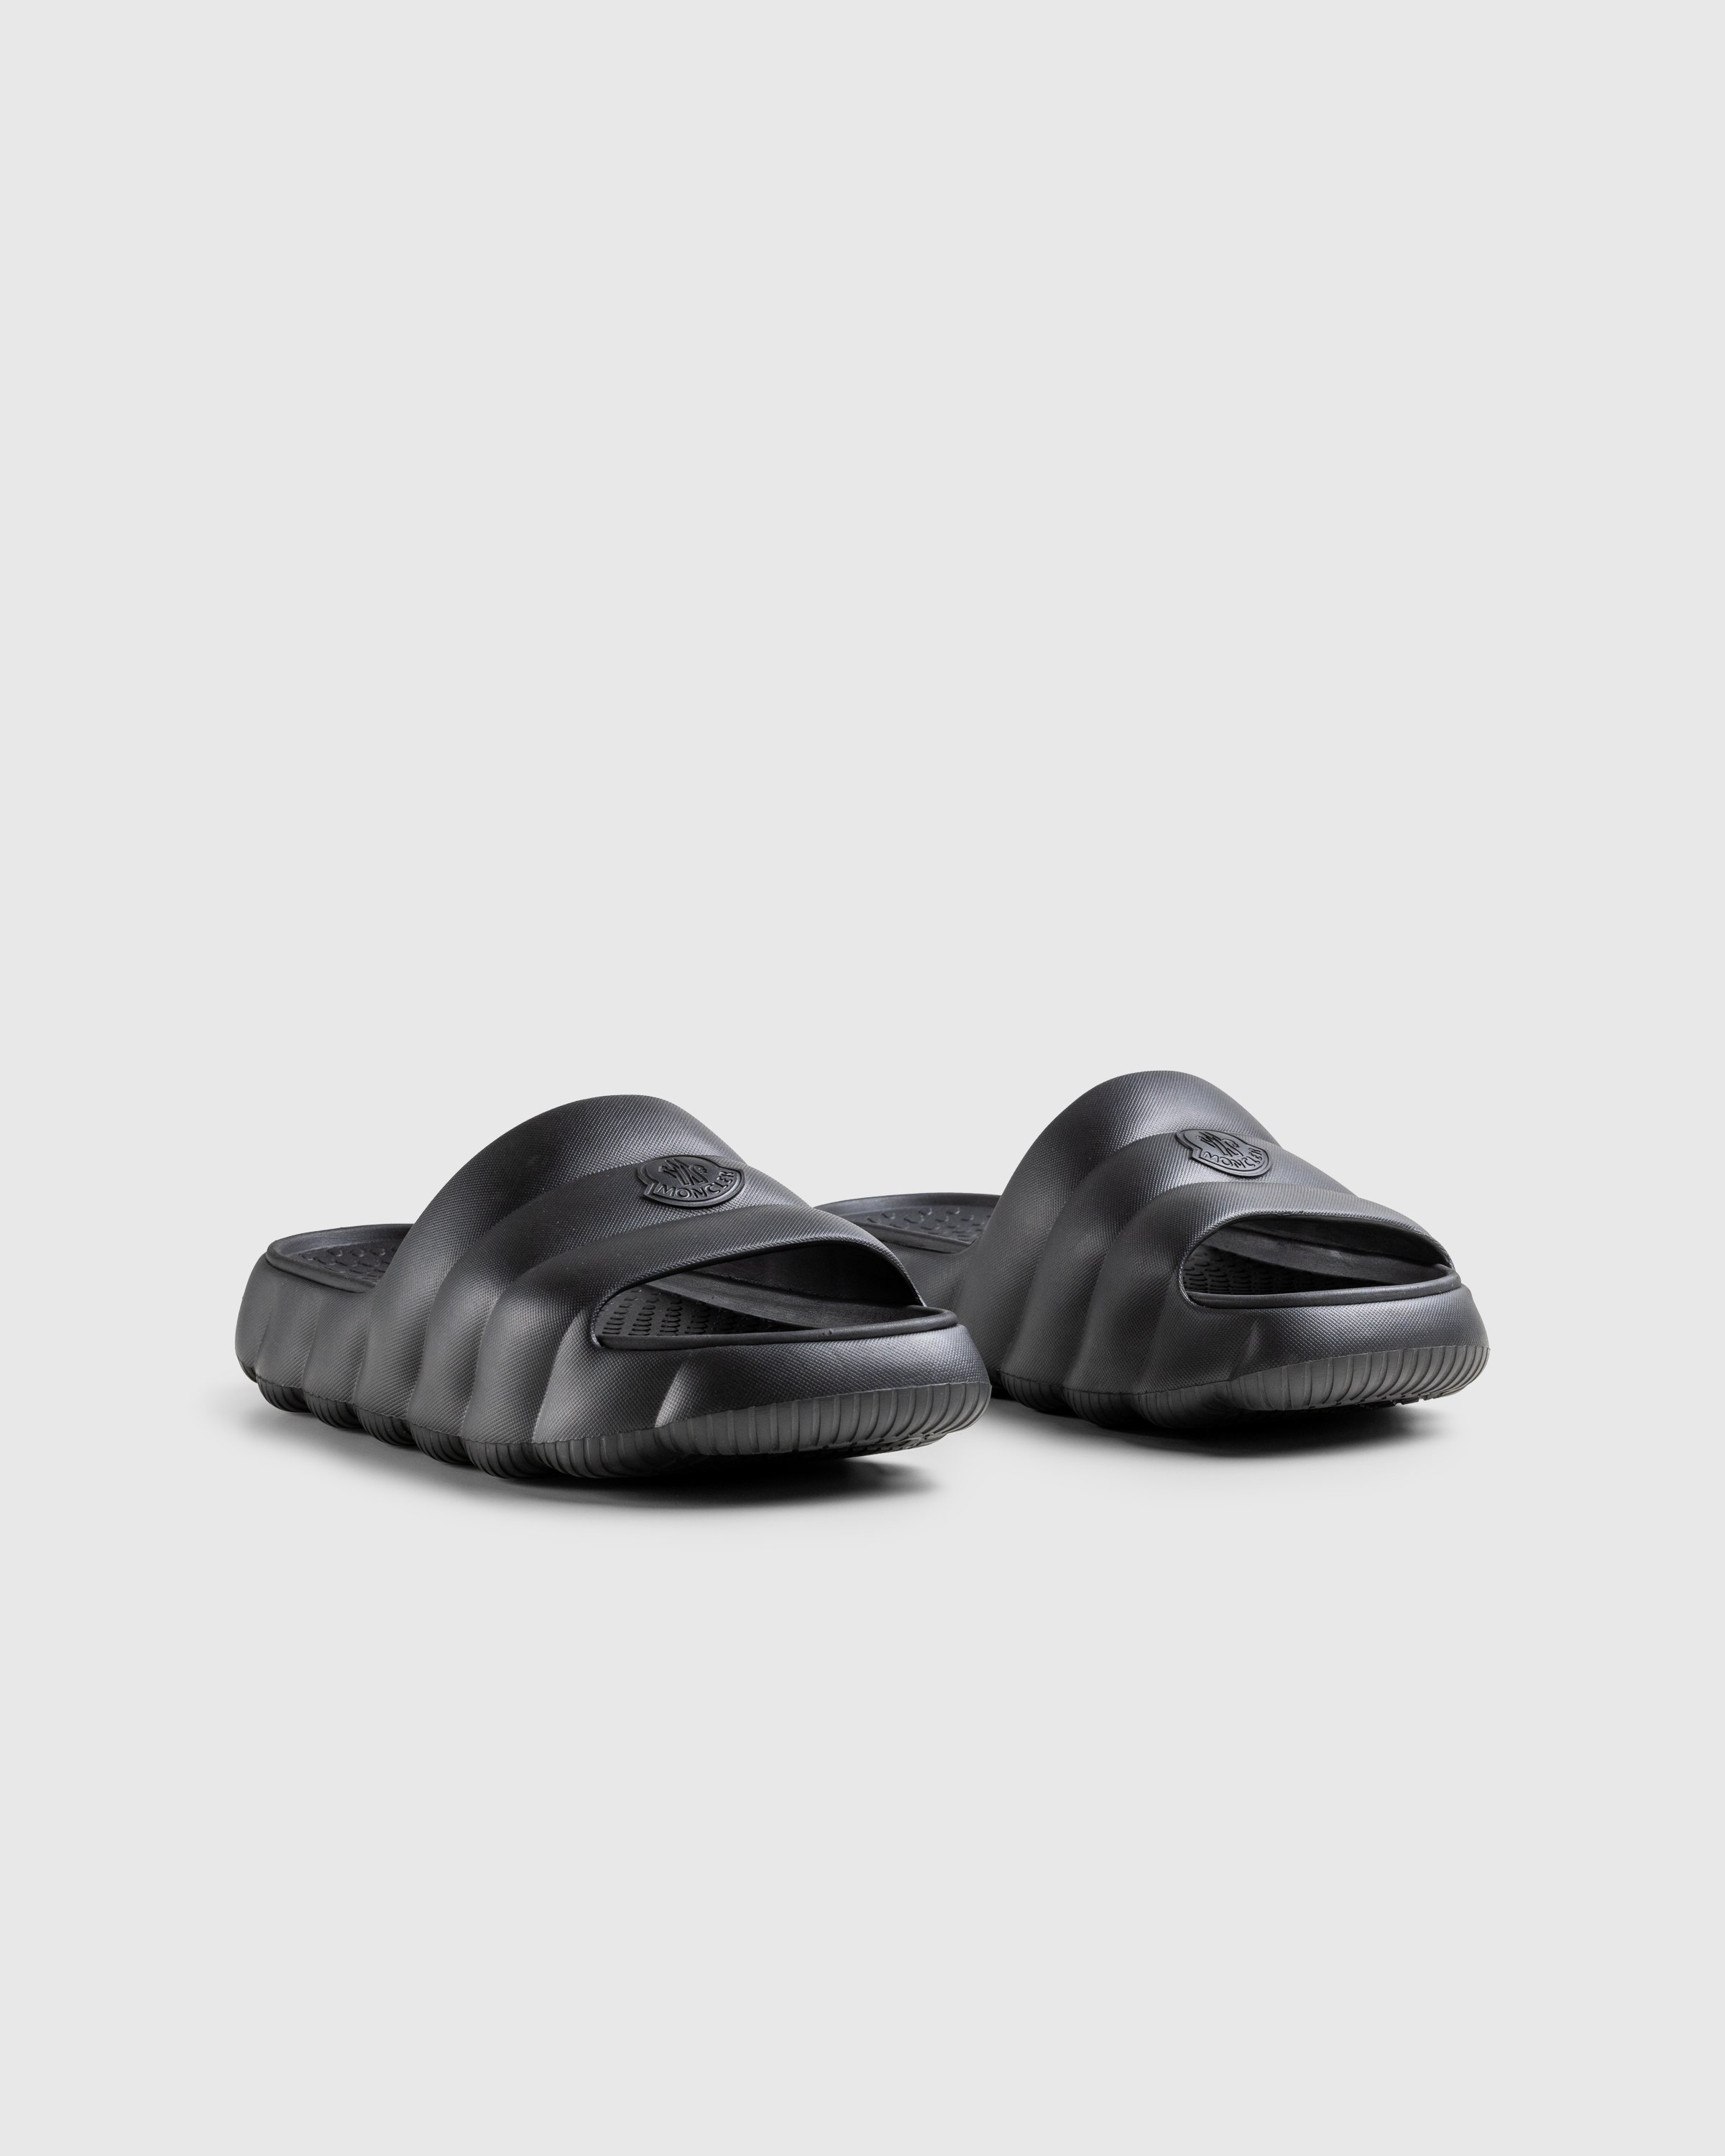 Moncler - LILO SLIDES BLACK - Footwear - Black - Image 3